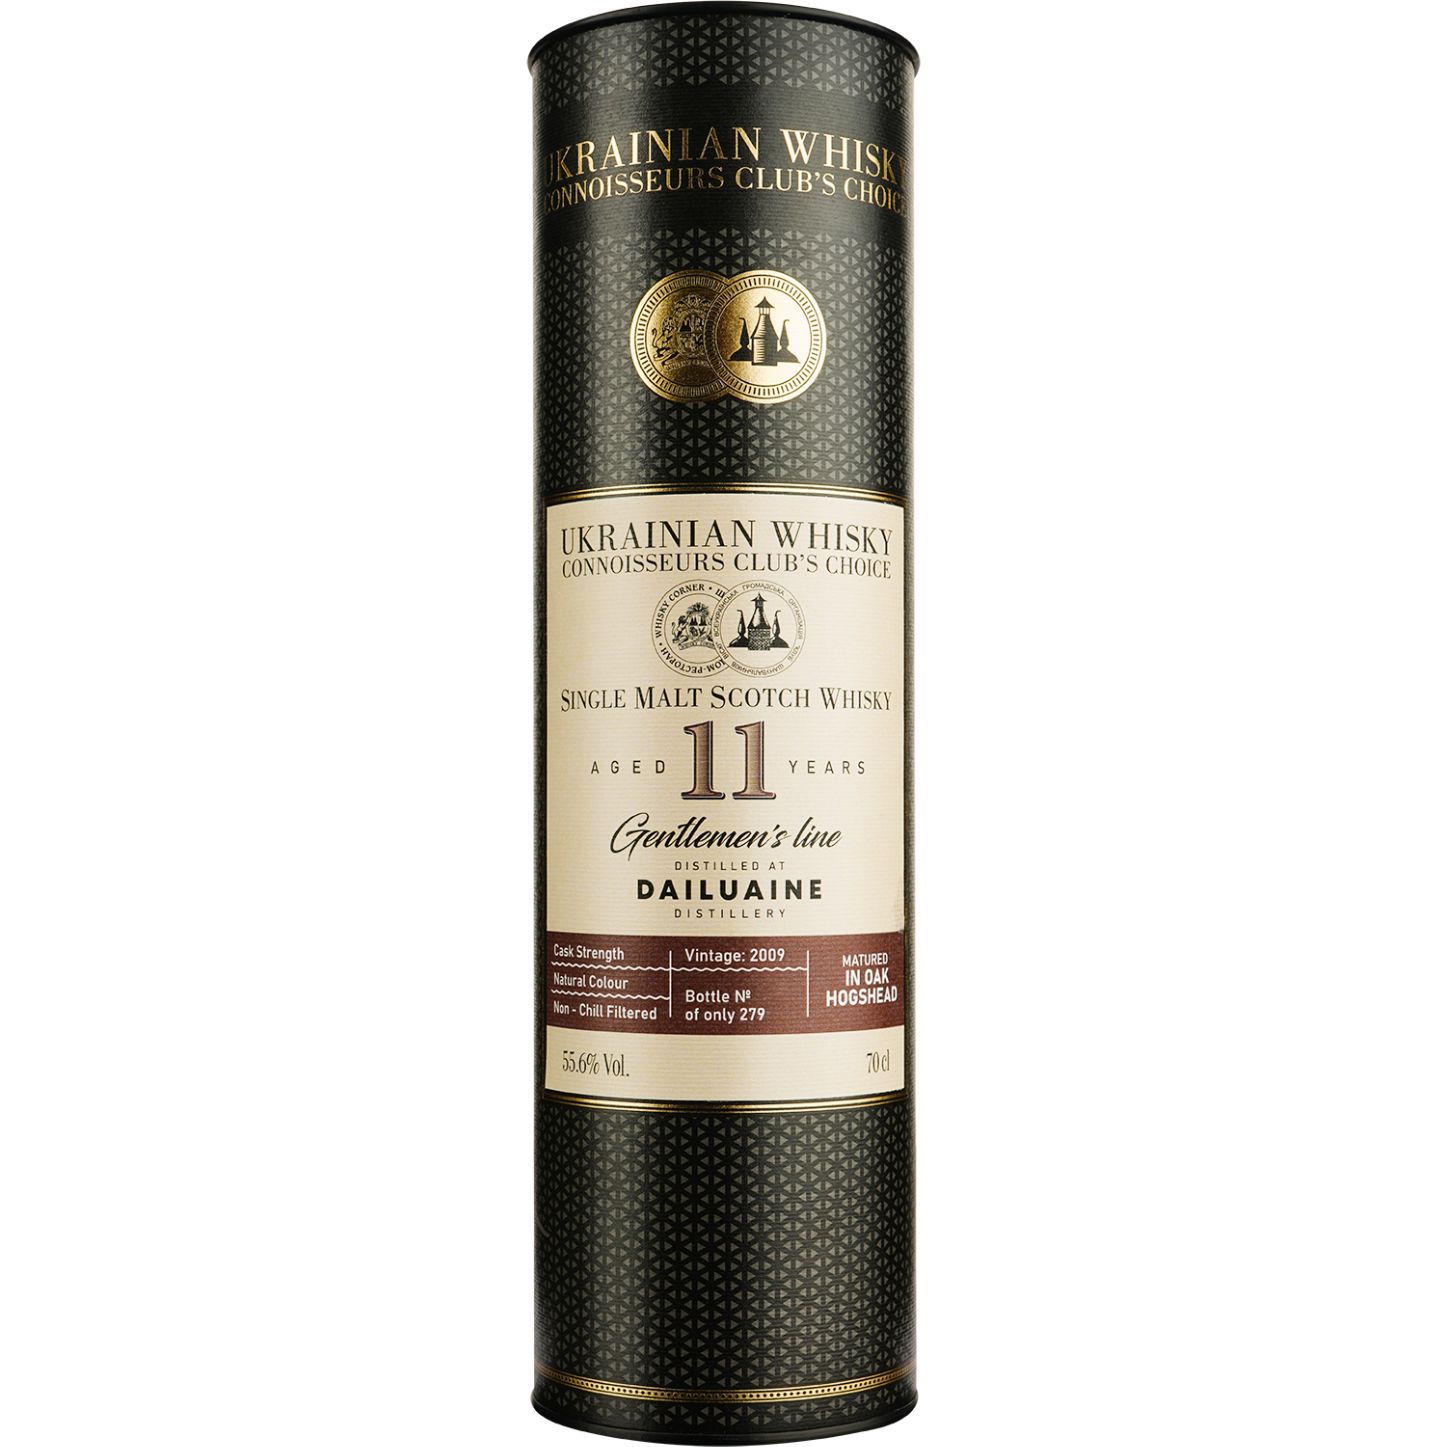 Віскі Dailuaine 11 Years Old Single Malt Scotch Whisky, у подарунковій упаковці, 55,6%, 0,7 л - фото 3